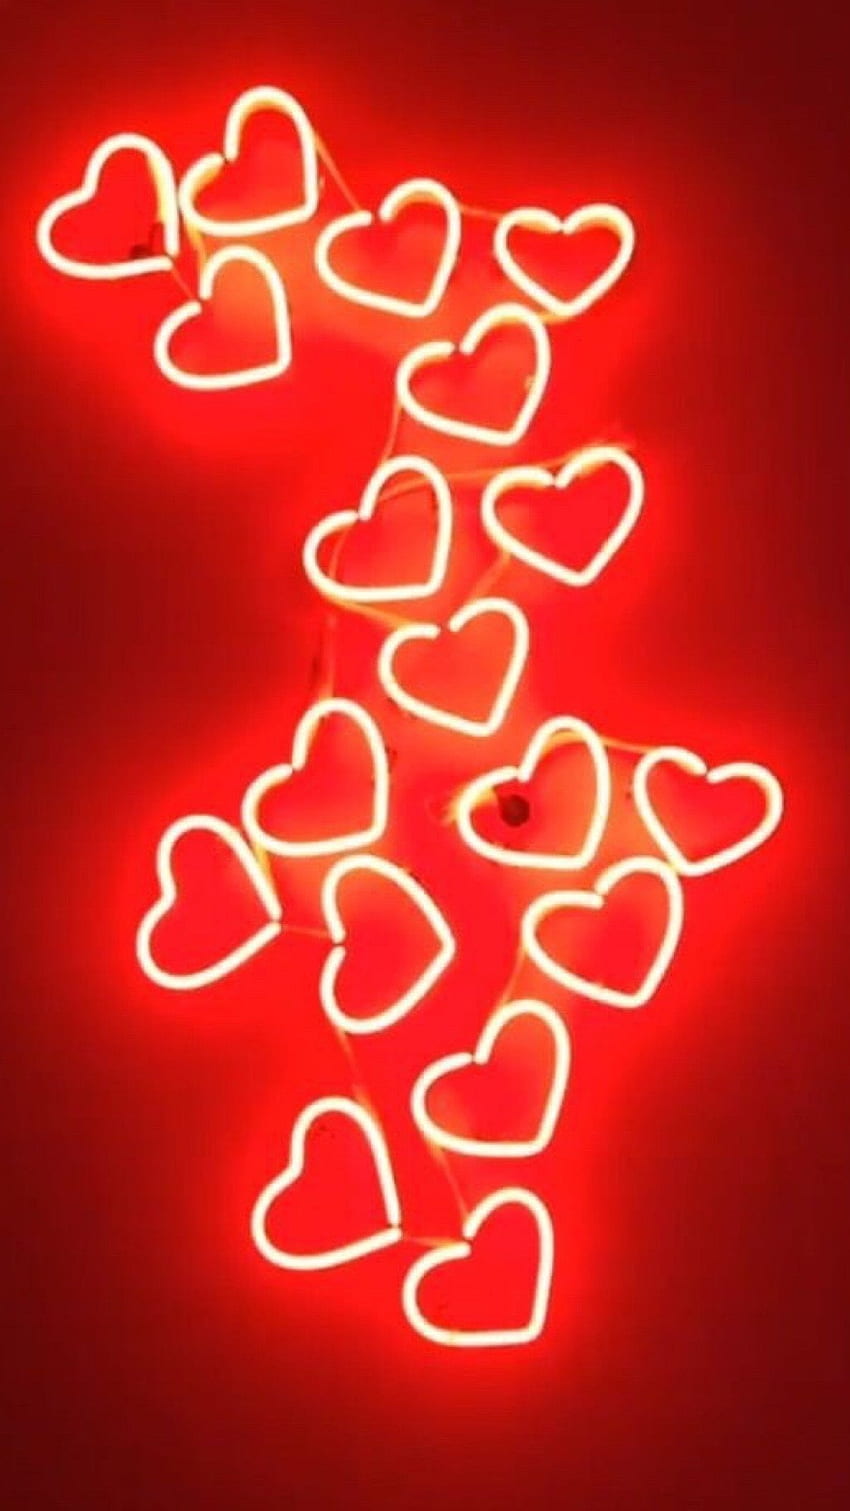 Hình nền trái tim đỏ thẩm mỹ HD - Hình nền trái tim đỏ thẩm mỹ HD có độ sắc nét, độ bóng của hình ảnh sống động giúp bạn có thể cảm nhận được tình yêu đầy ngọt ngào và ý nghĩa. Hãy chiêm ngưỡng và cảm nhận sự đẹp trên hình nền này.